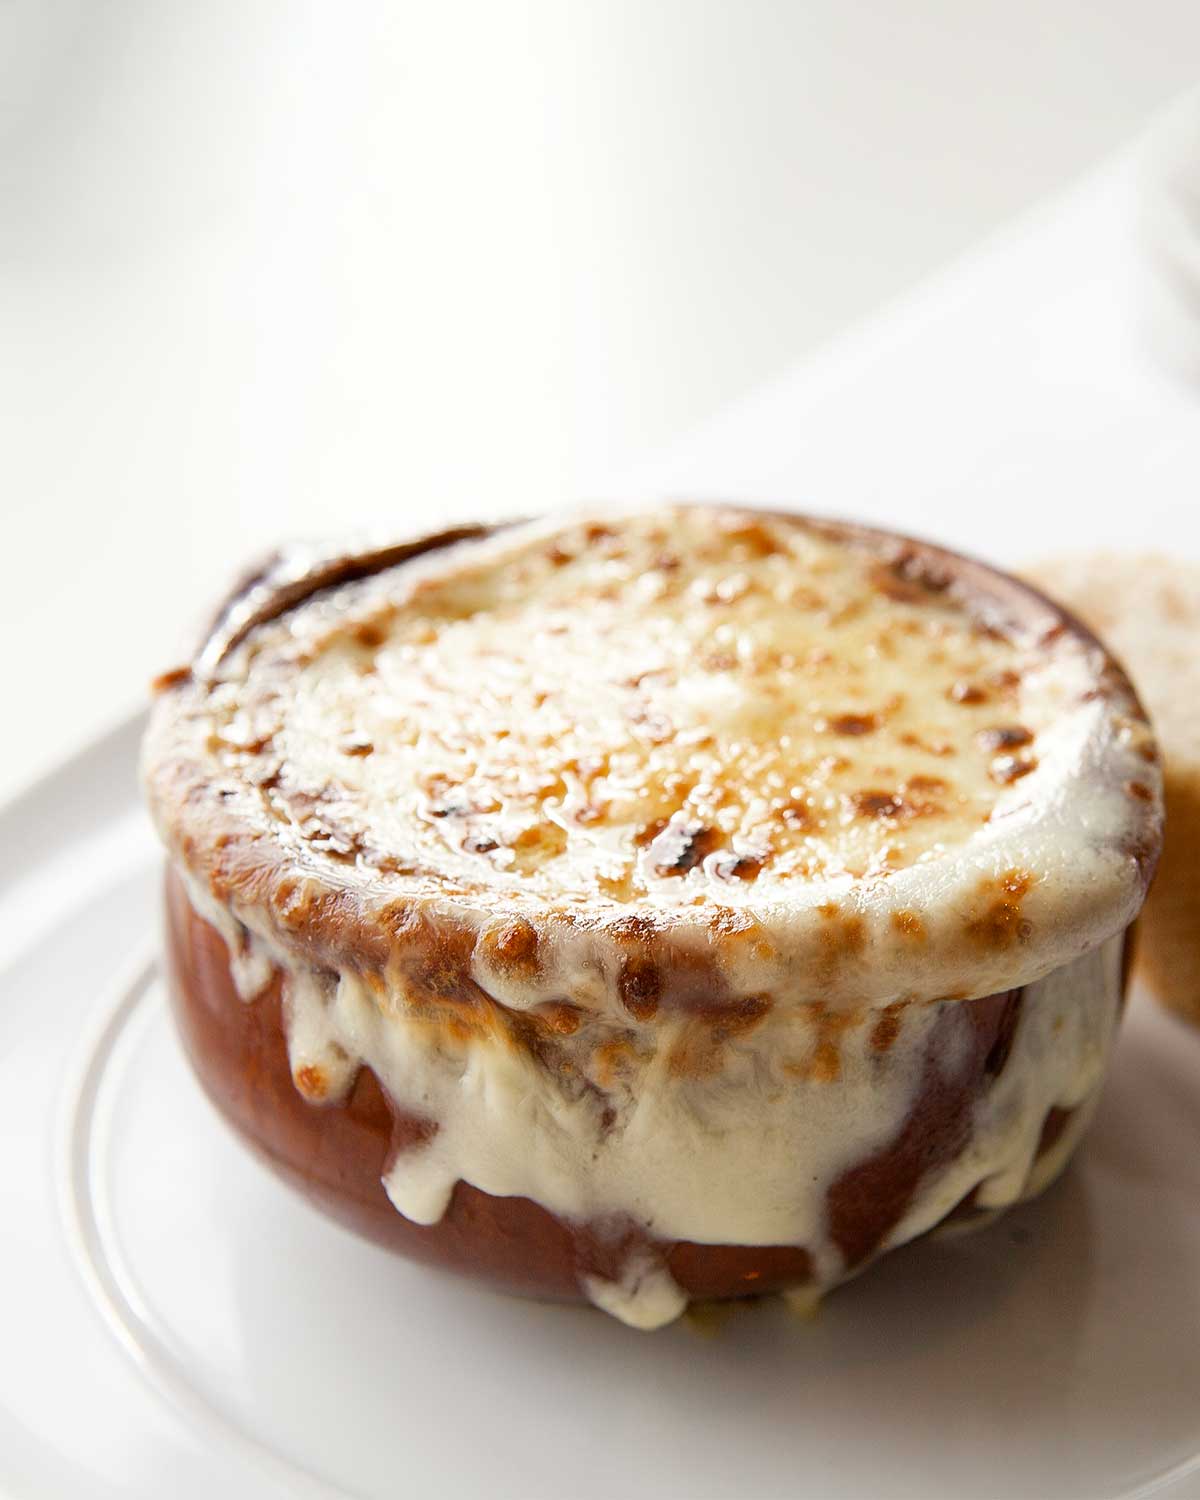 En keramisk soppskål fylld med fransk löksoppa, och toppad med smält ost som droppar ner på sidan av skålen.